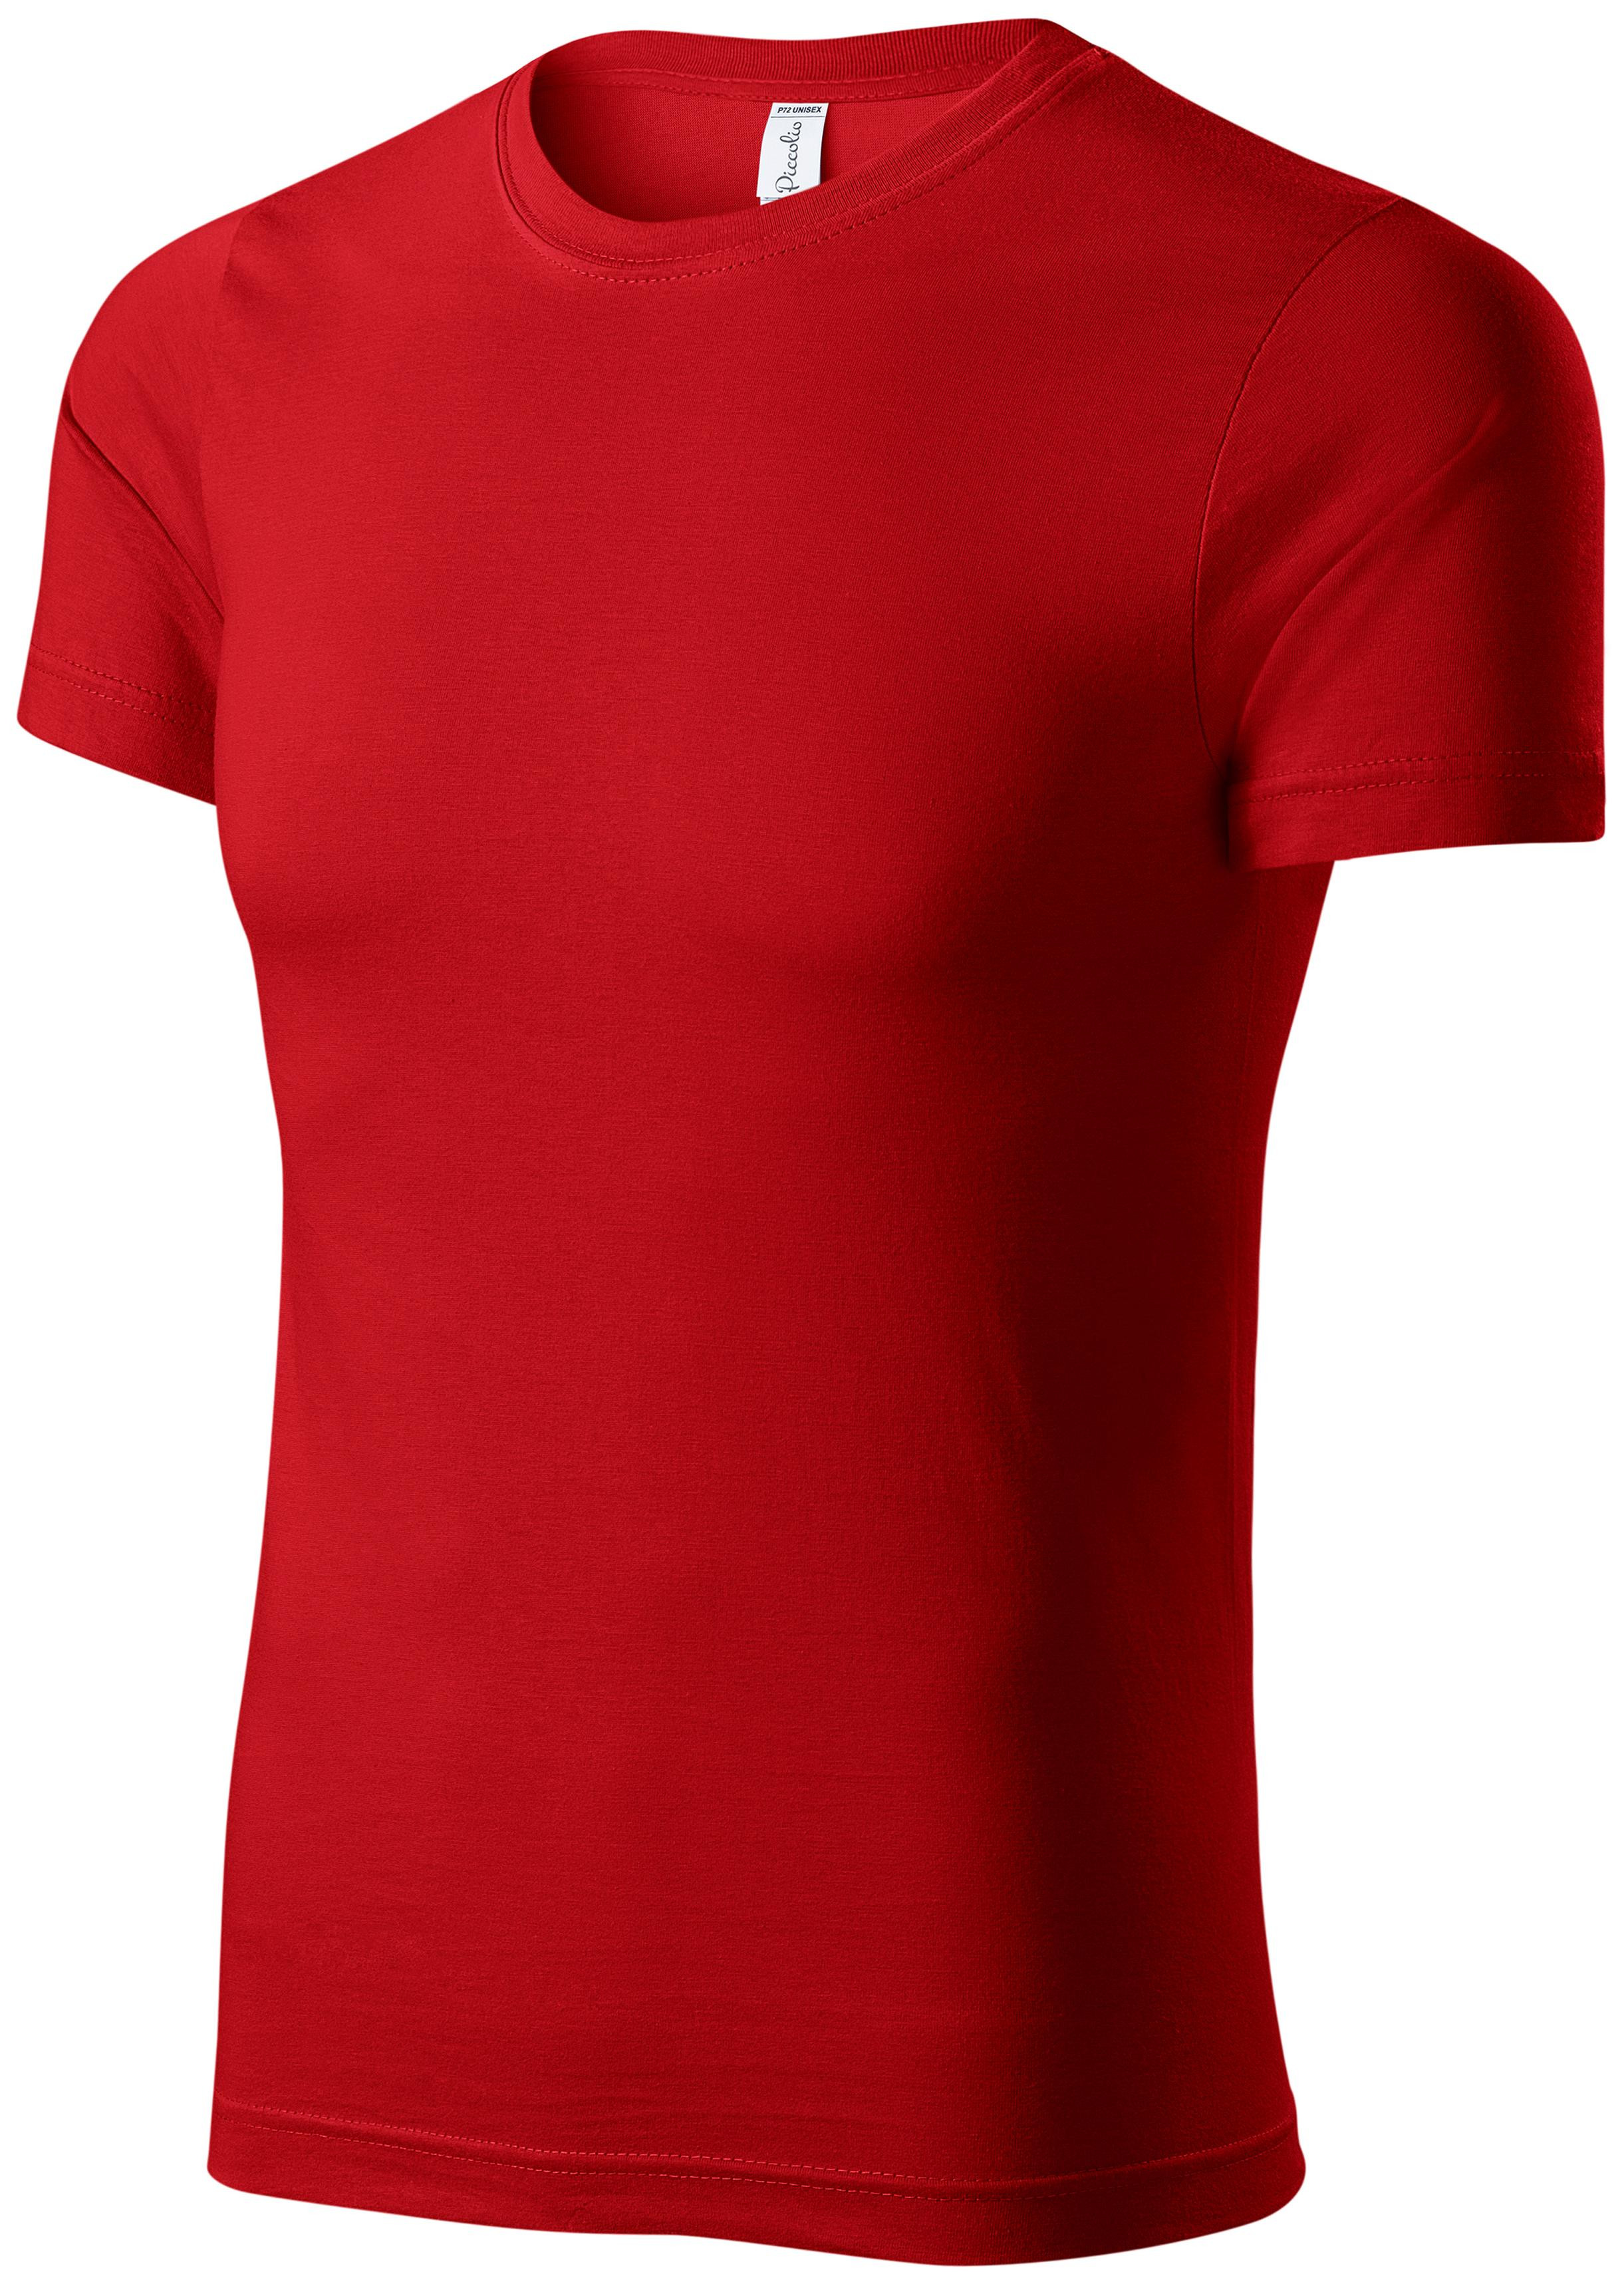 Detské ľahké tričko, červená, 134cm / 8rokov